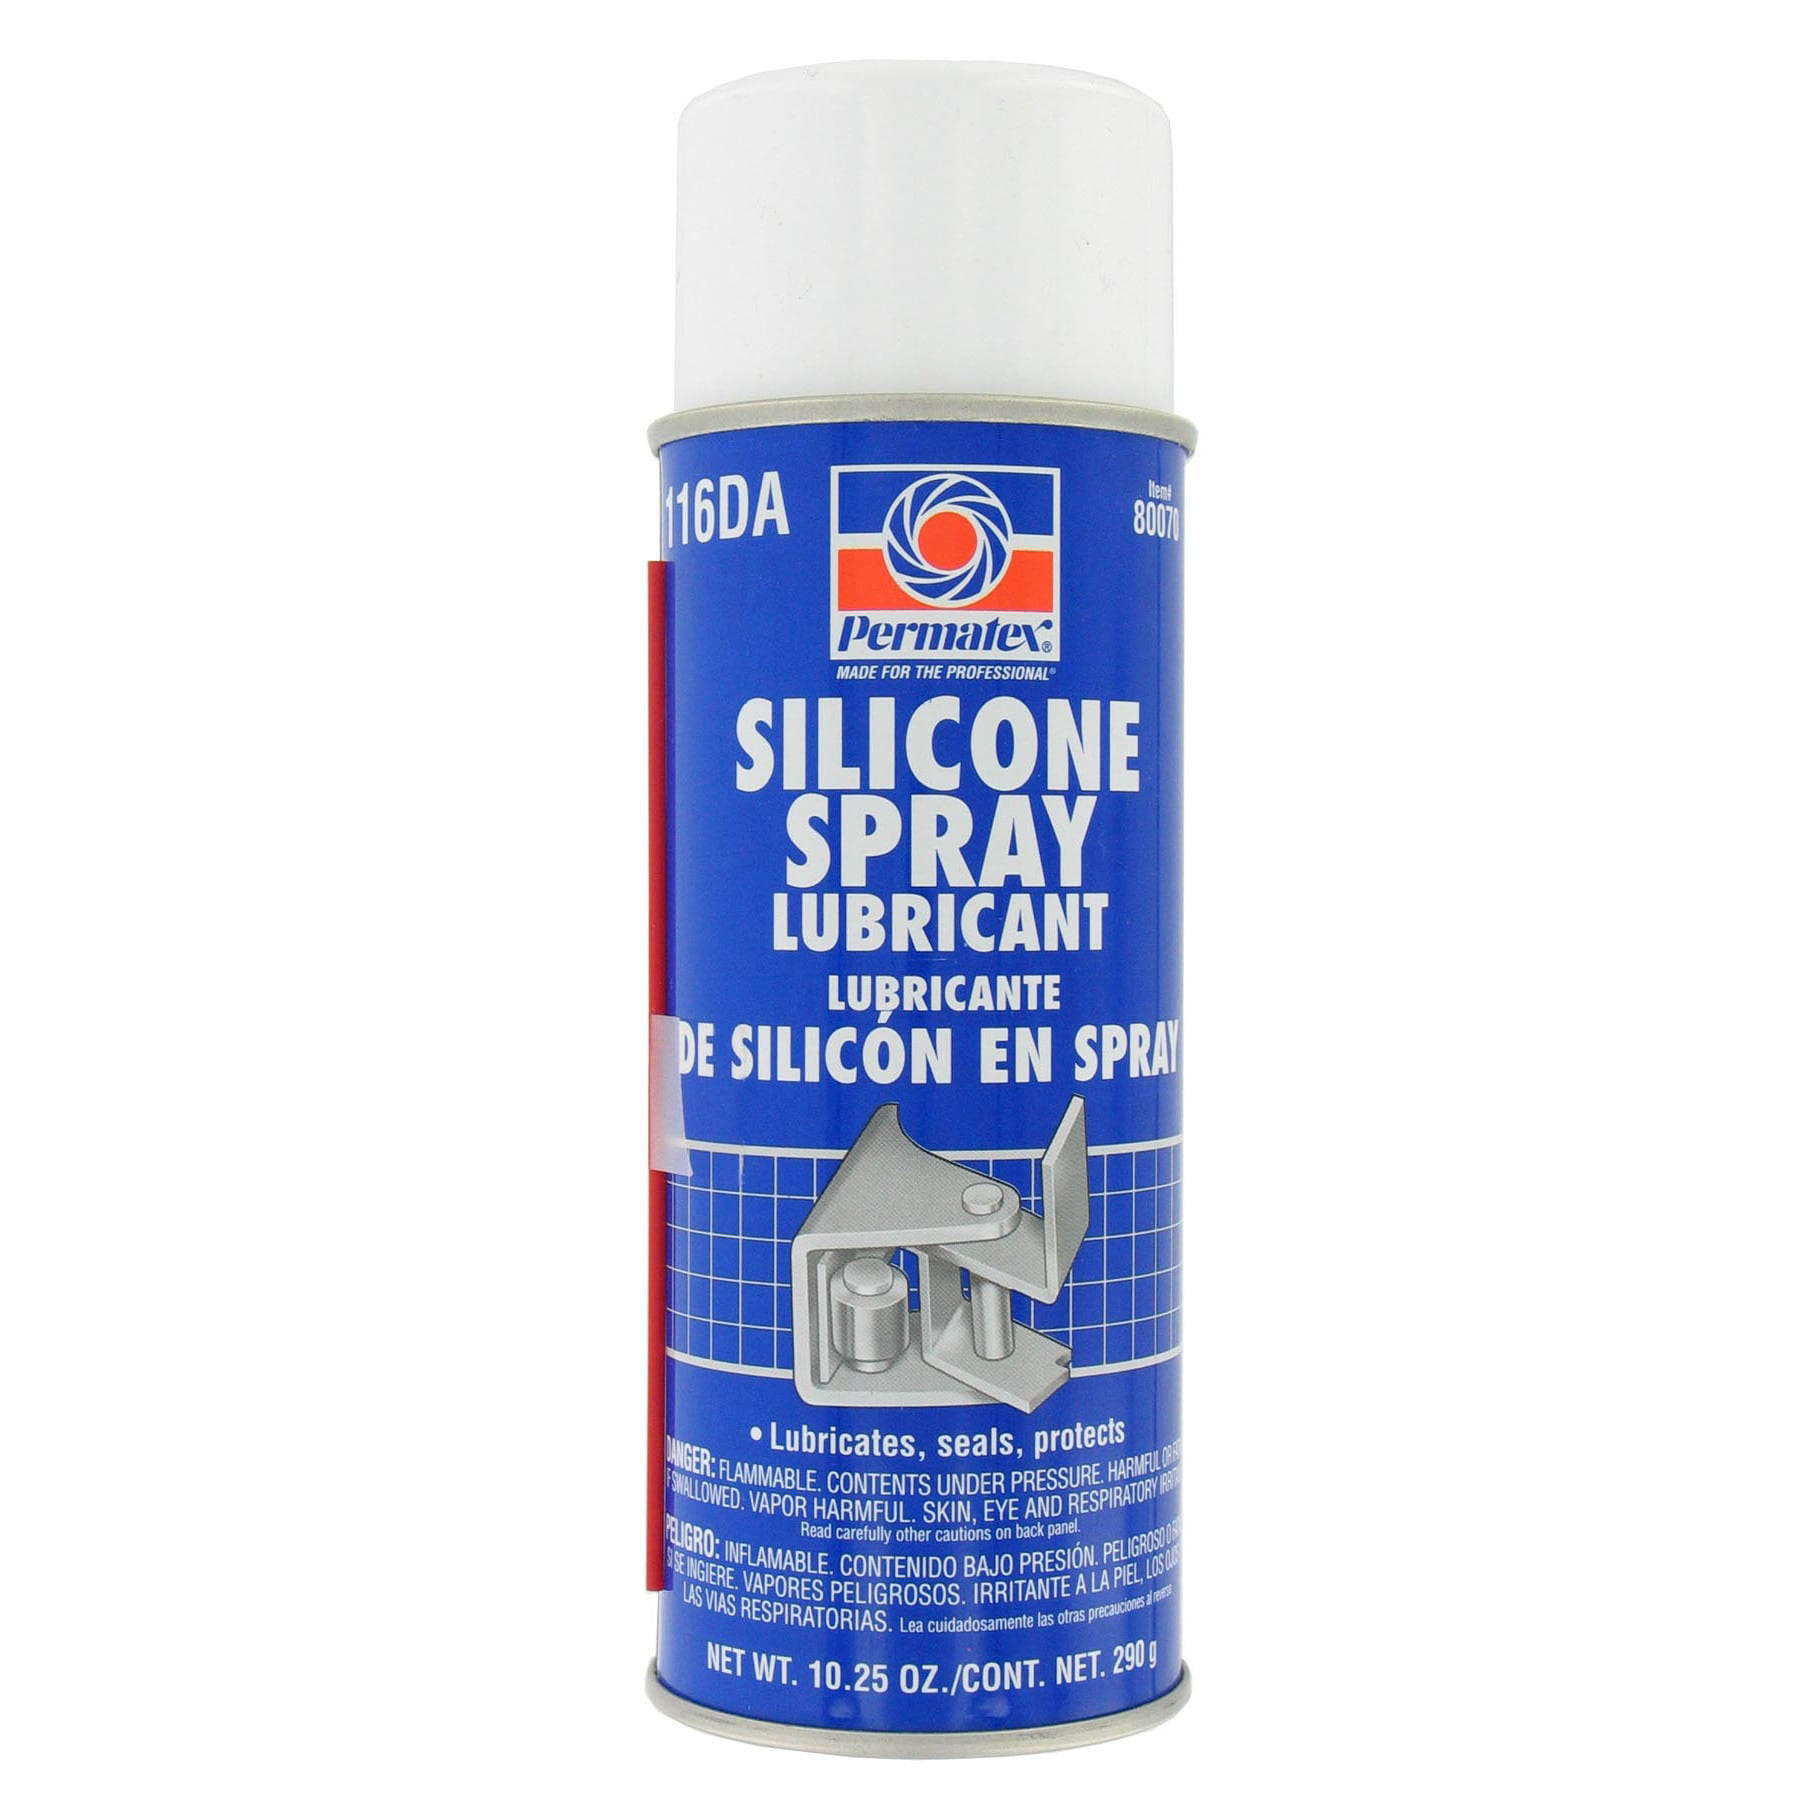 Spray pulverizador aceite y vinagre 70ml ø40x2,5cm metaltex 8002522528507  78210 METALTEX